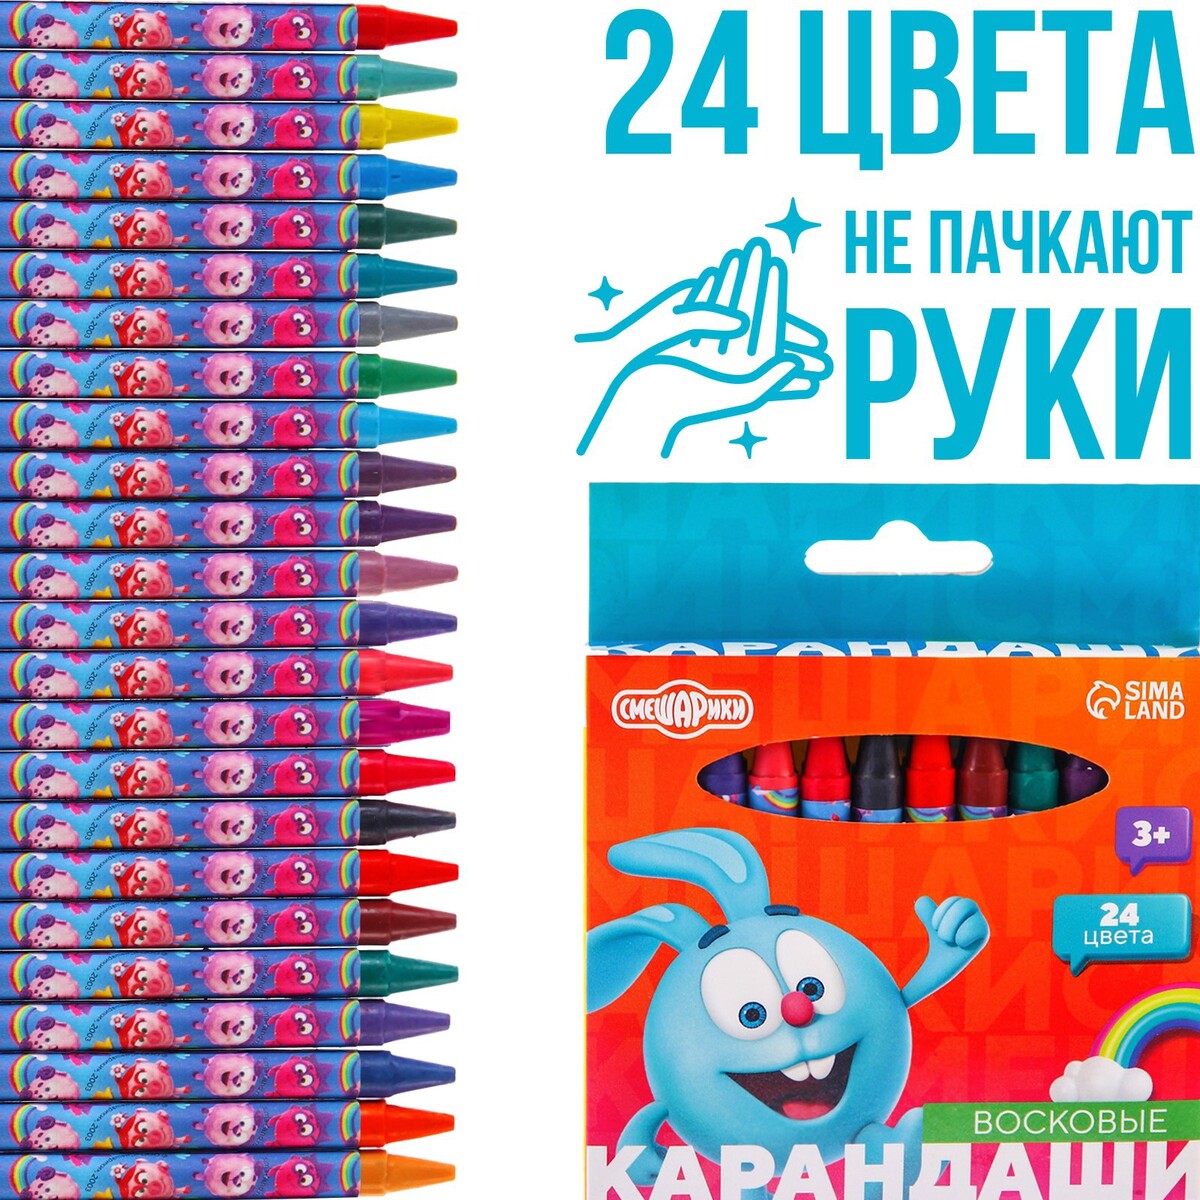 Восковые карандаши, набор 24 цвета, смешарики адвент календарь набор 9 химических опытов смешарики